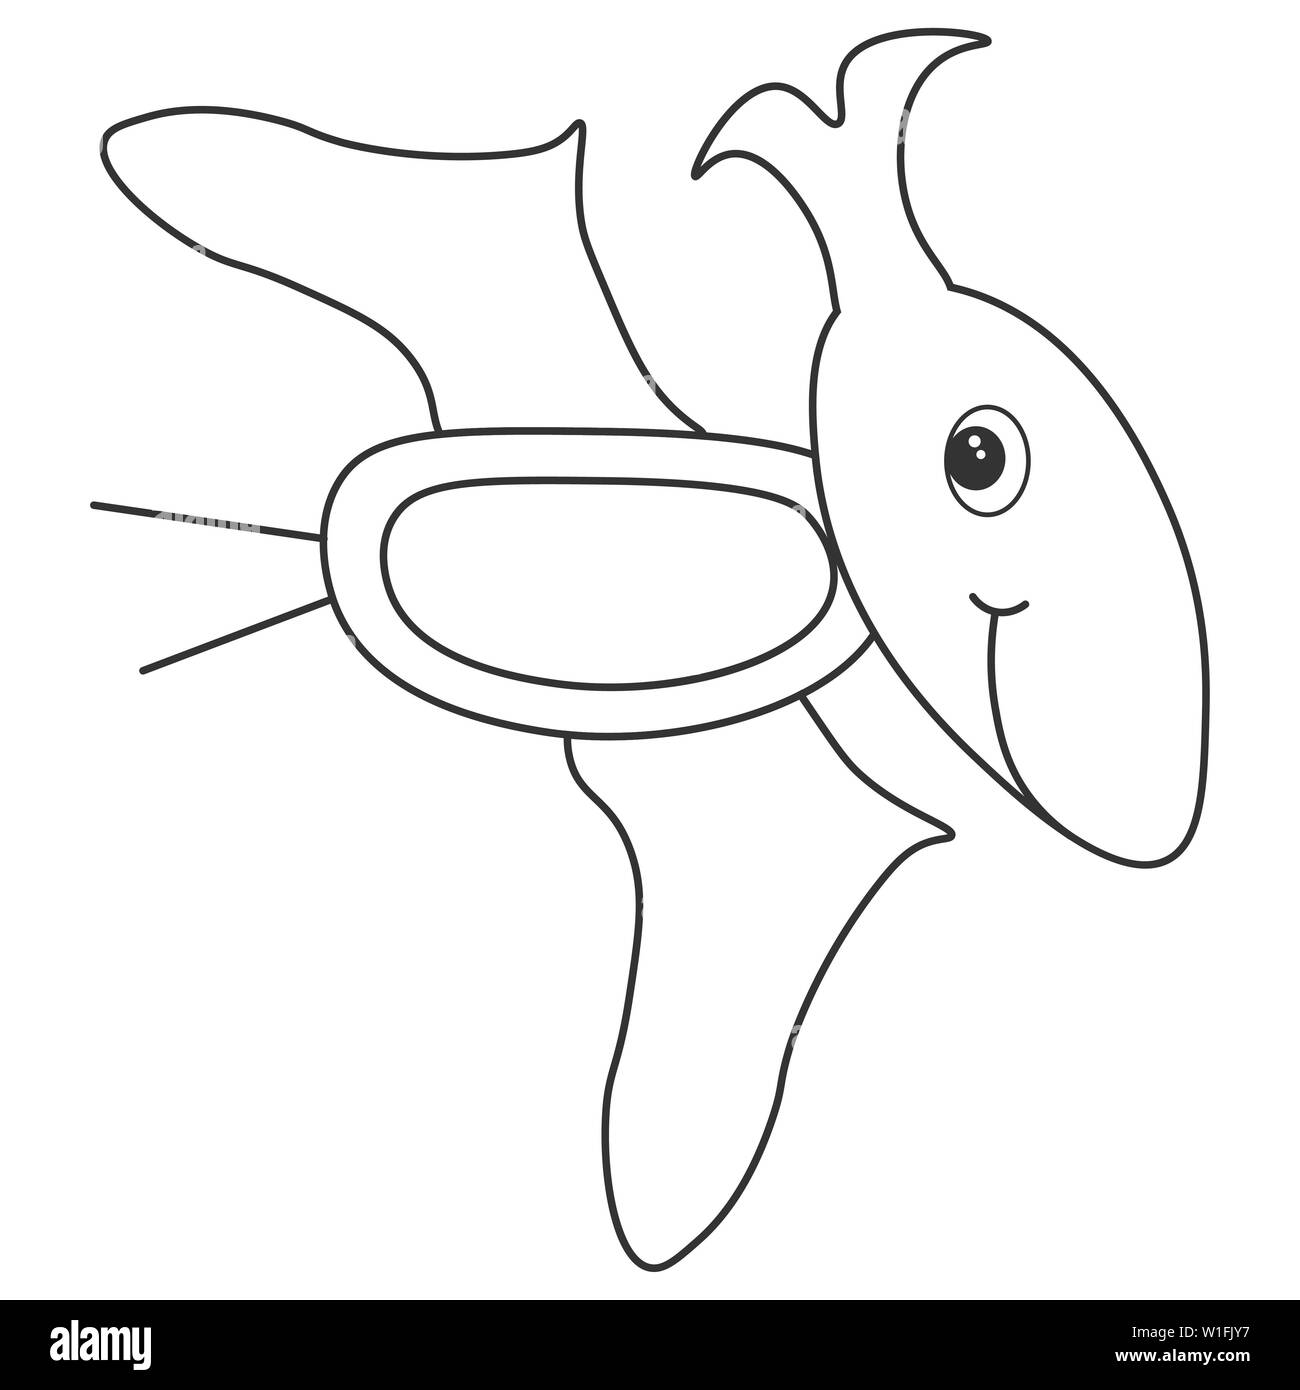 Contour de dinosaurus ptérodactyle, qui peut être utilisé comme colorant. Isolé sur fond blanc. illustration. Banque D'Images